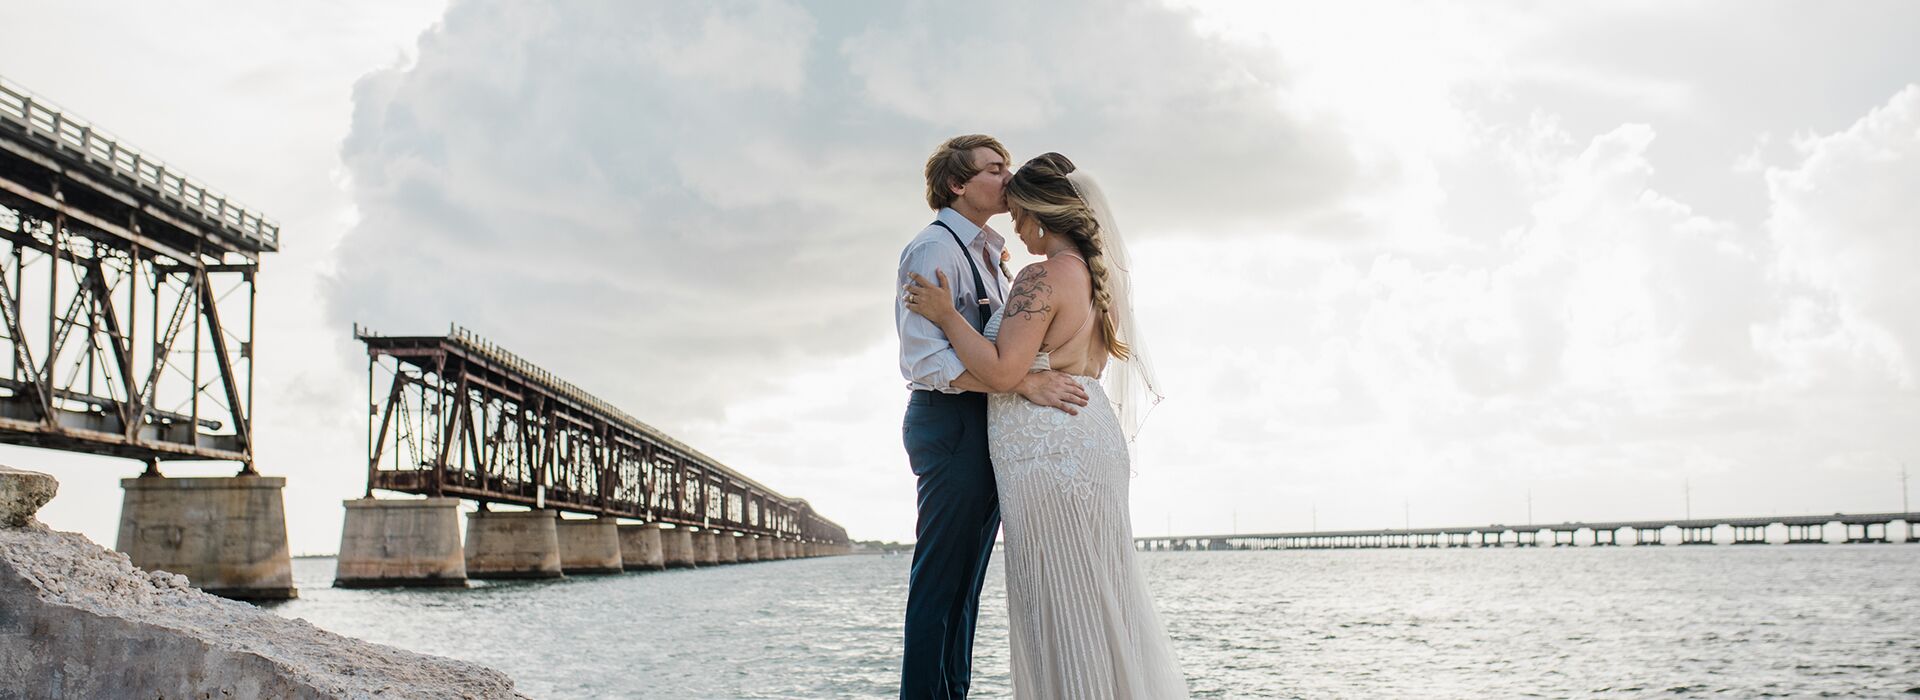 A Key West elopement